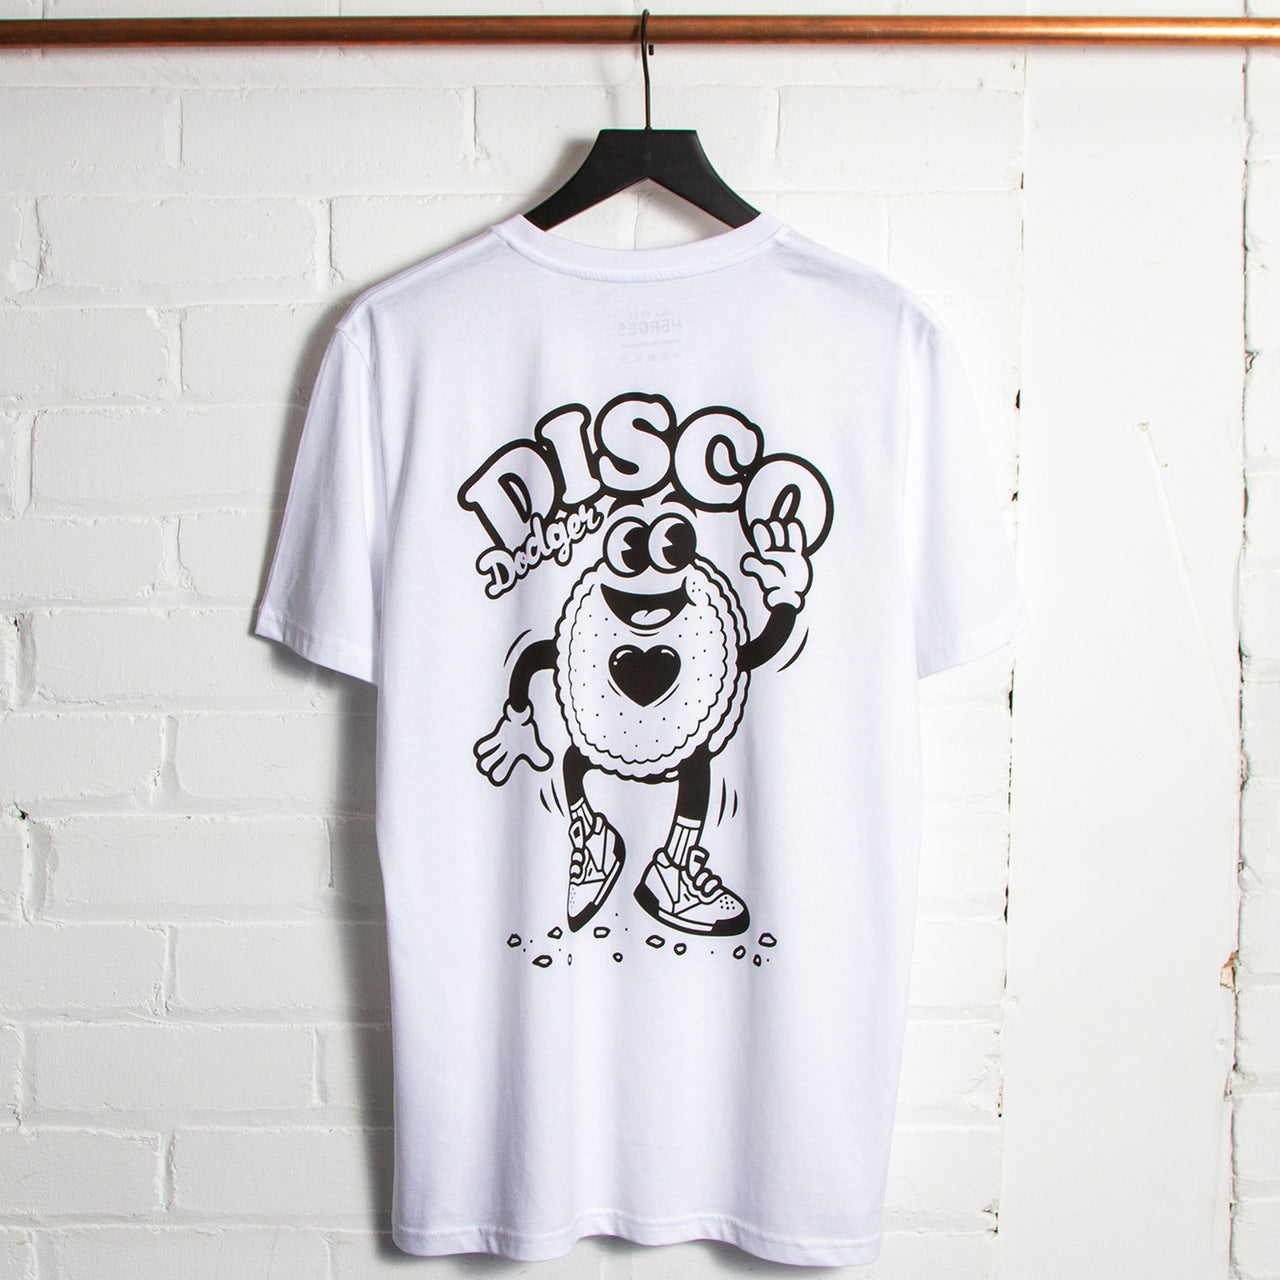 Disco Dodger - Tshirt - White